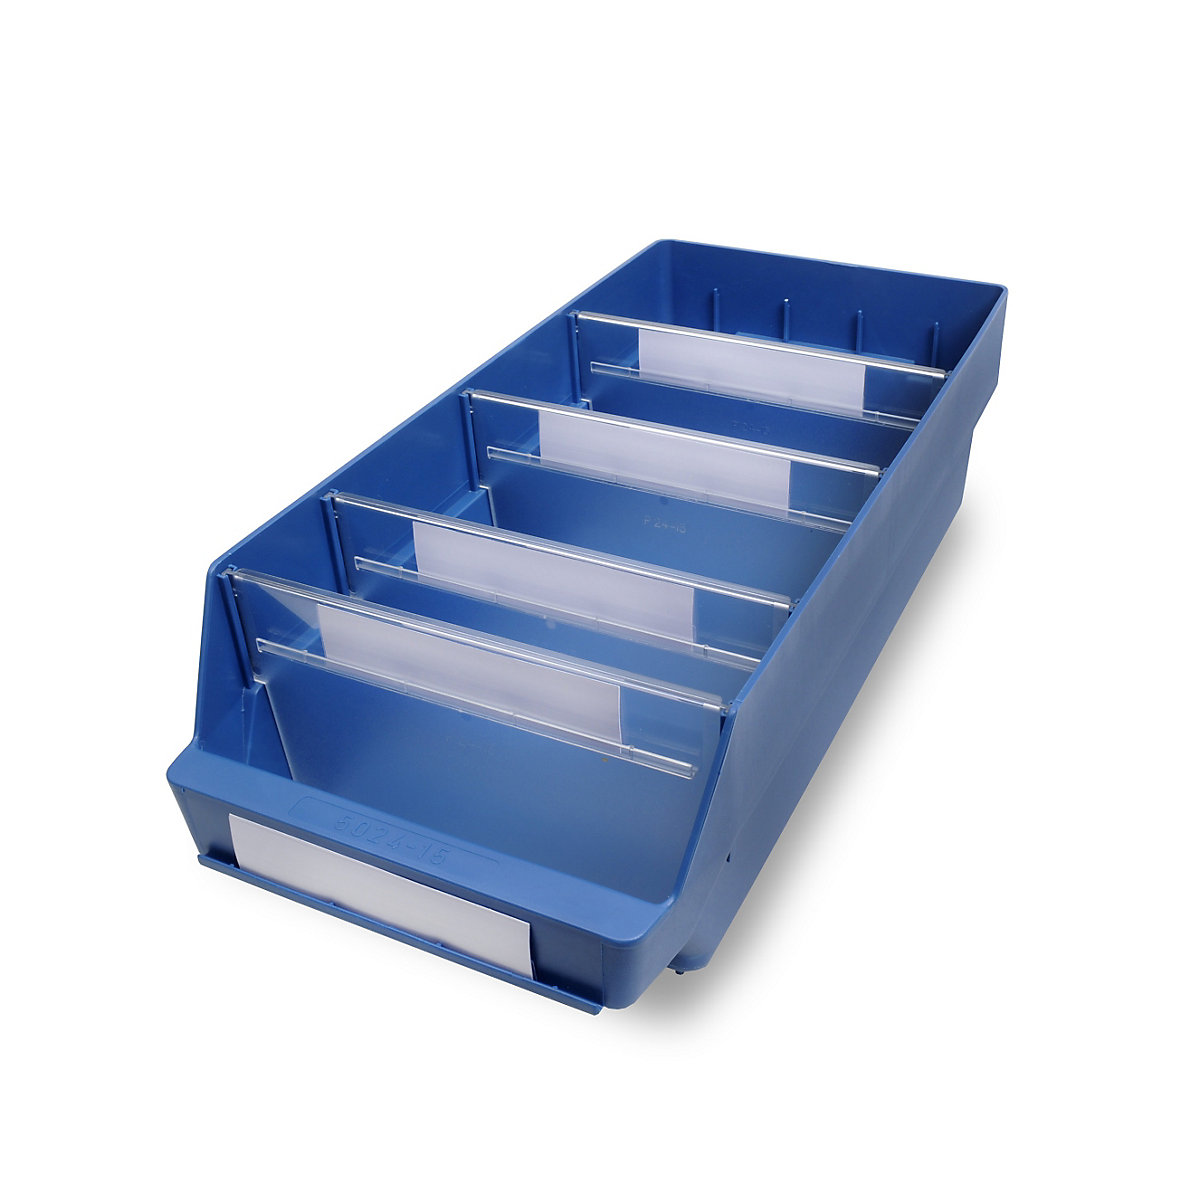 STEMO Regalkasten aus hochschlagfestem Polypropylen, blau, LxBxH 500 x 240 x 150 mm, VE 10 Stk